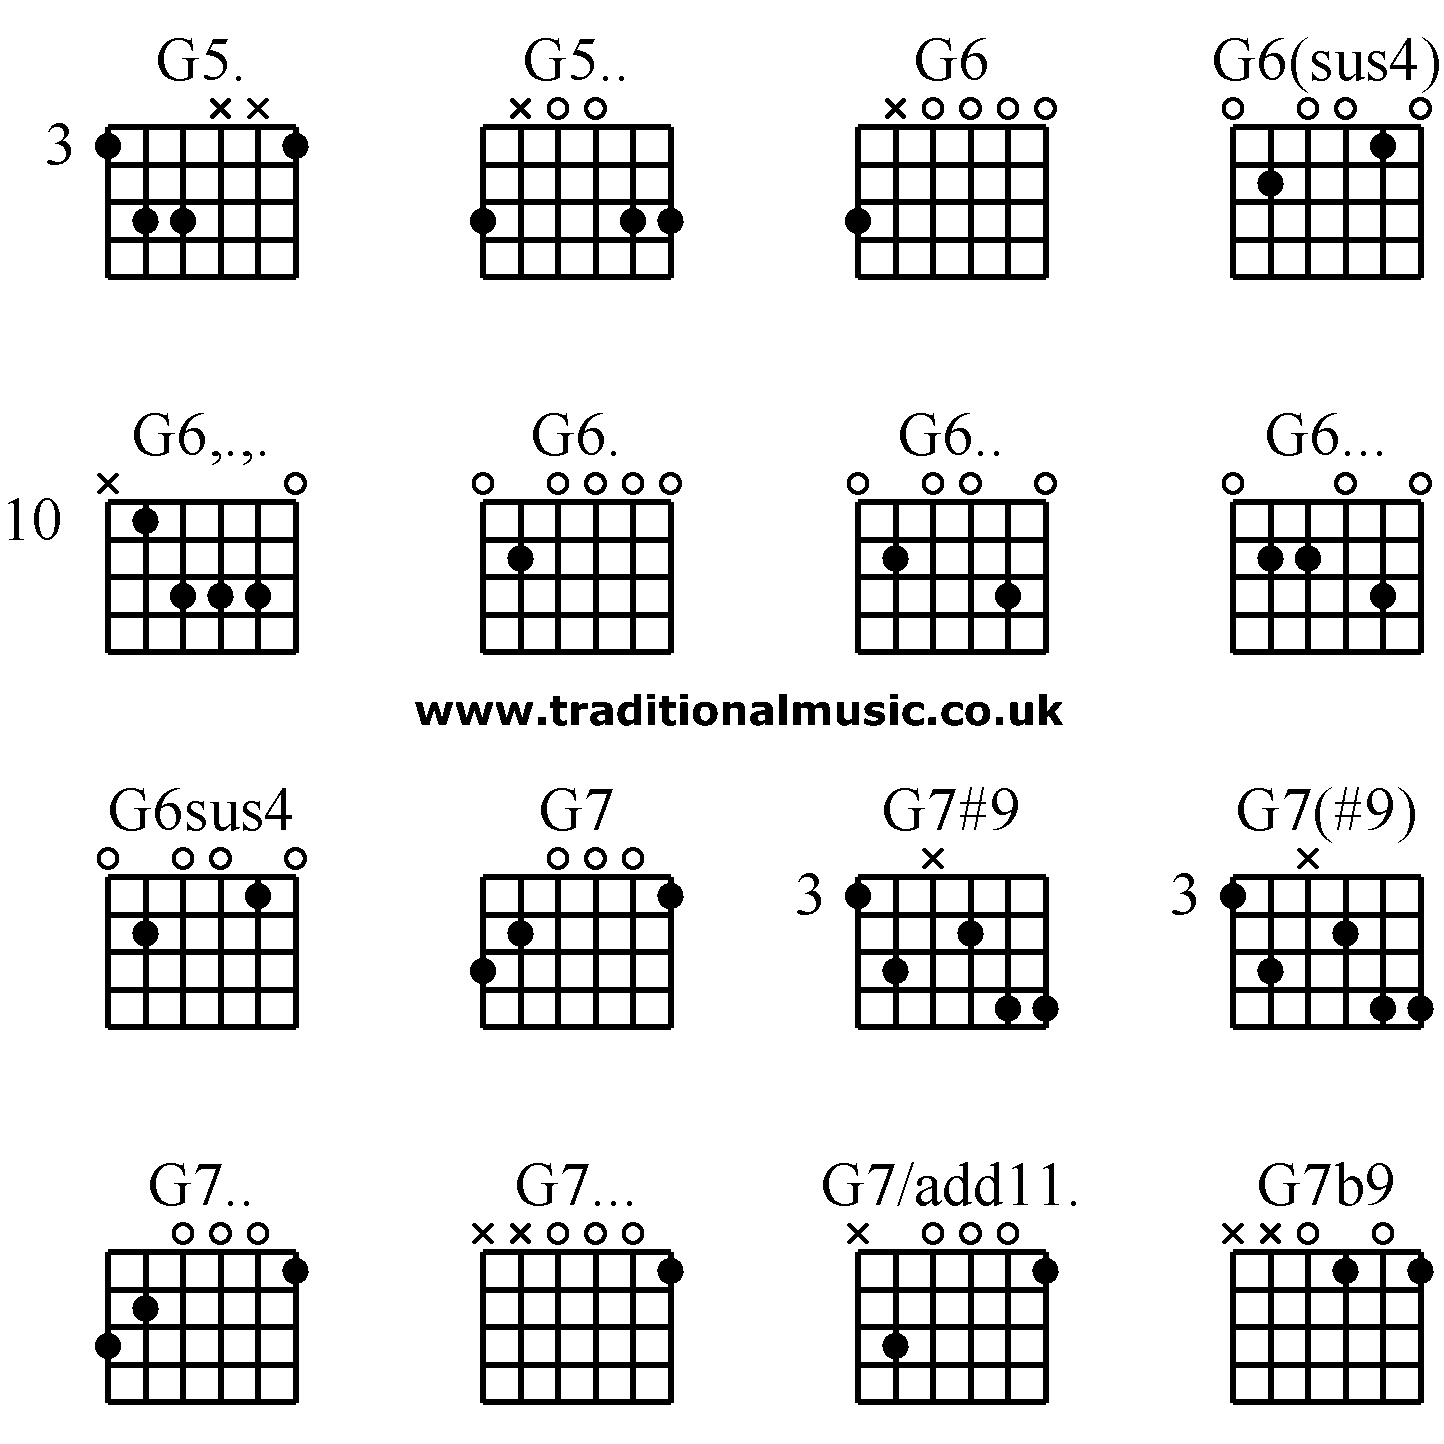 Guitar chords advanced - G5. G5. G6 G6(sus4) G6,.,. G6. G6. G6. G6sus4 G7  G7#9 G7(#9) G7. G7. G7/add11. G7b9